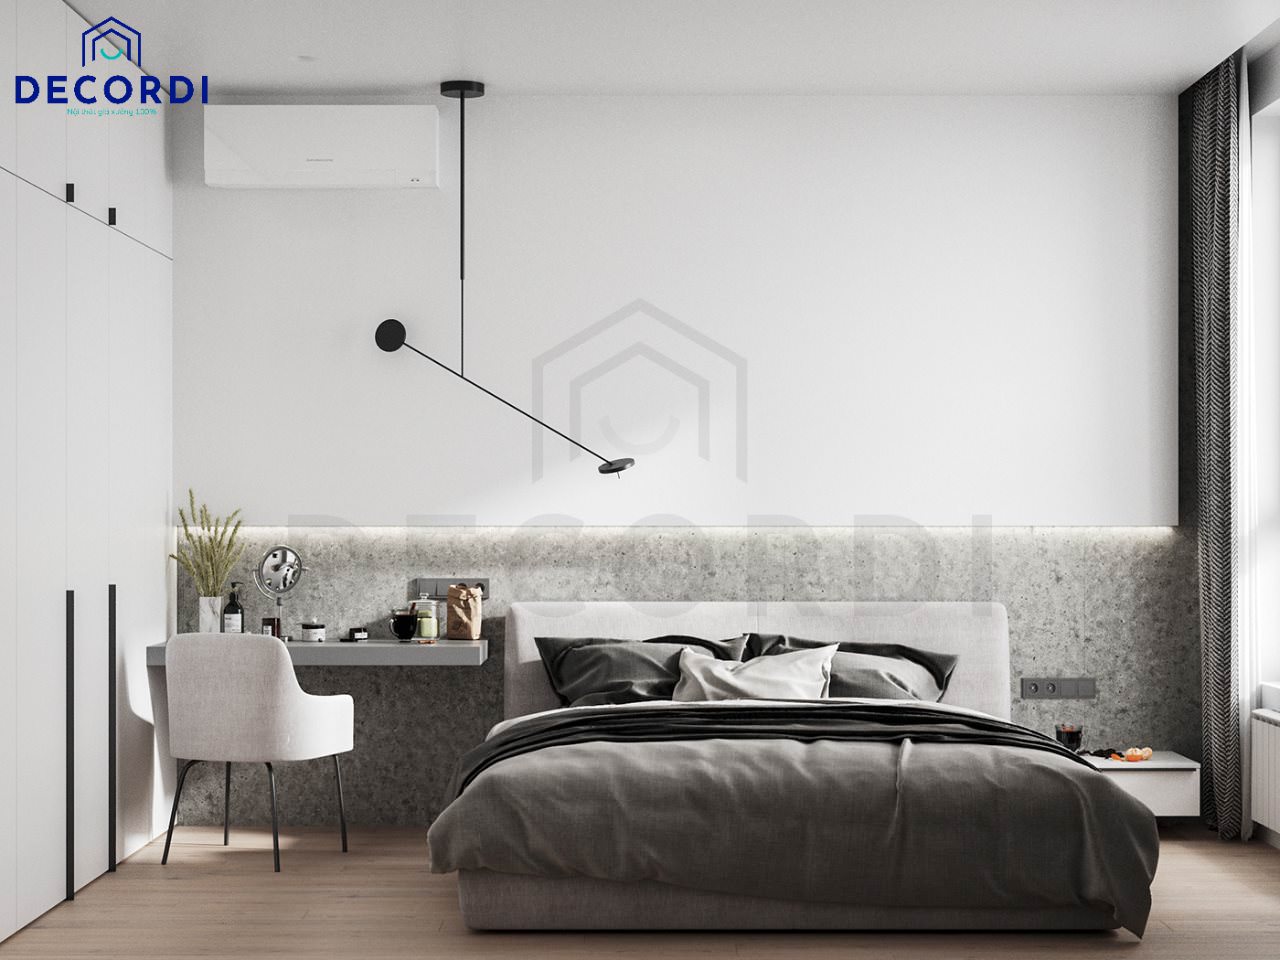 Không gian phòng ngủ theo phong cách tối giản, màu xám phối trắng nhẹ nhàng